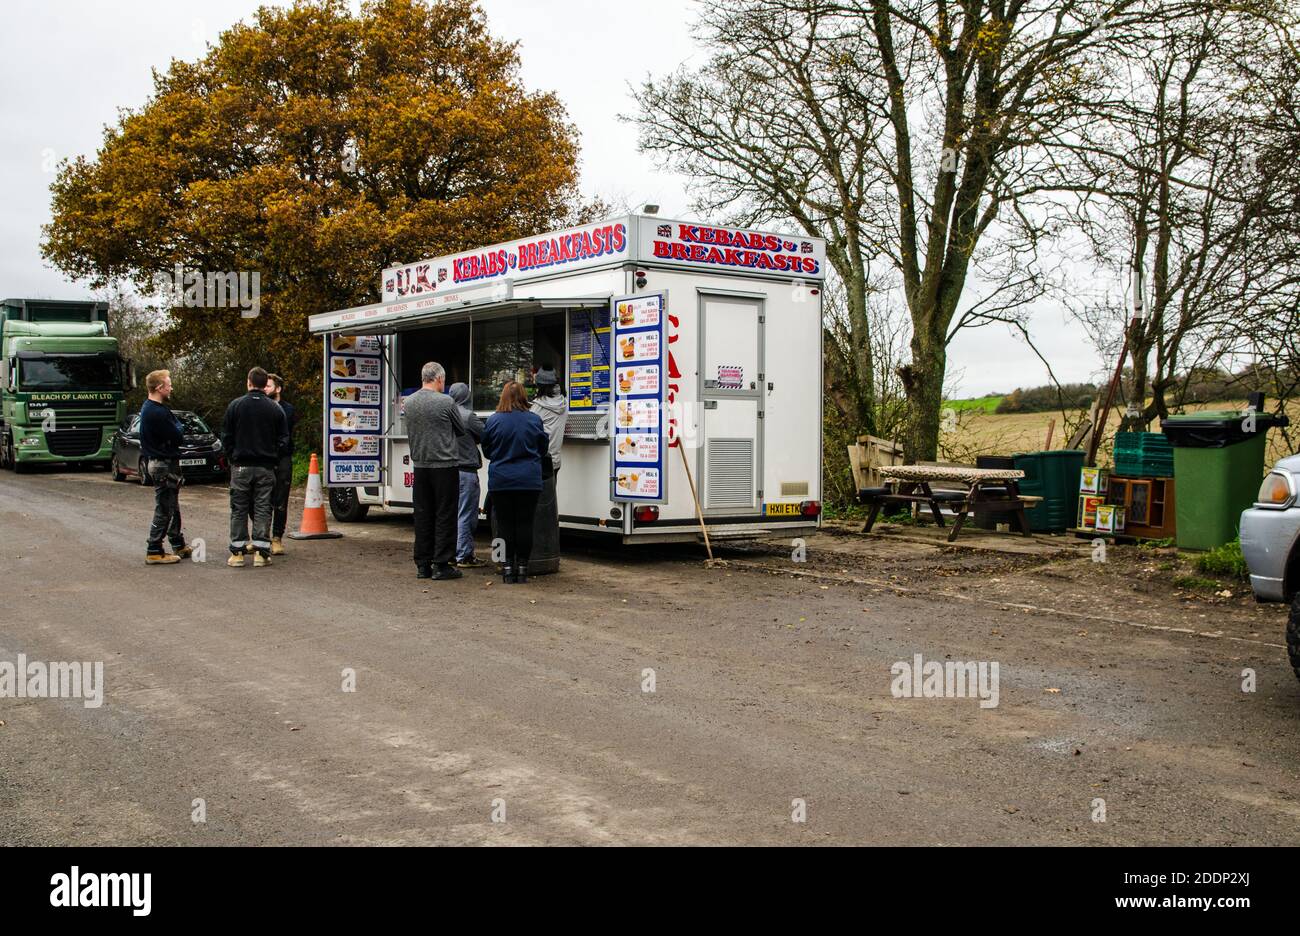 Basingstoke, Regno Unito - 17 novembre 2020: I clienti in attesa di essere serviti in un furgone kebab in una sosta sulla A30 strada vicino a North Waltham, Hampshire su un'altra strada Foto Stock